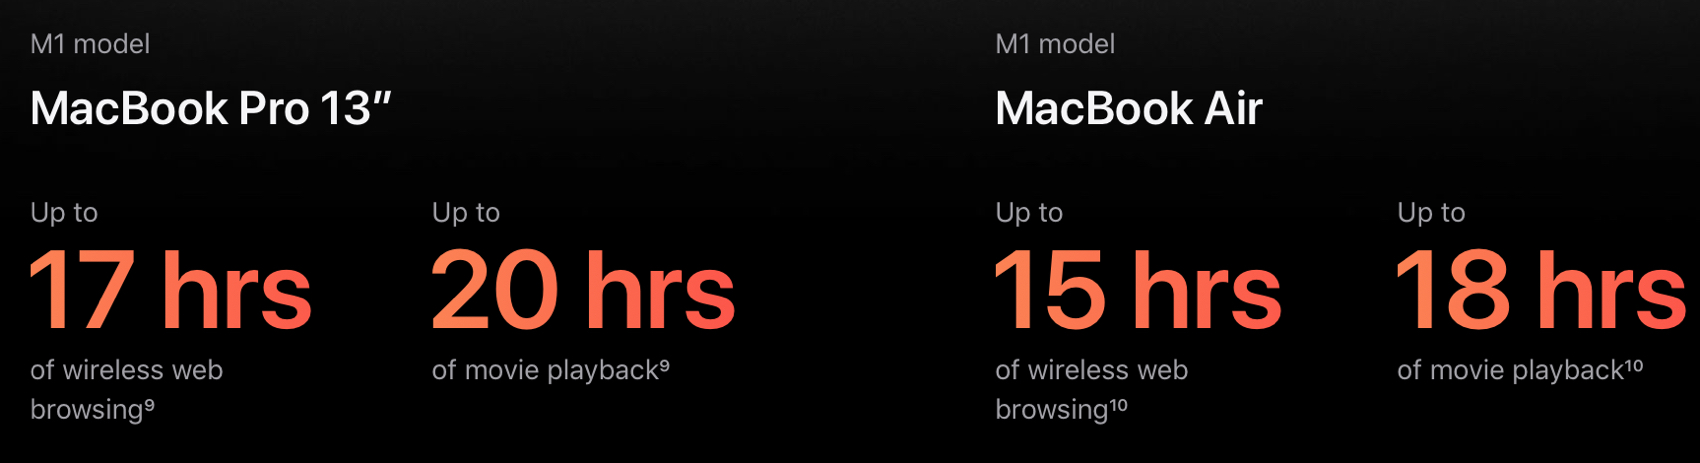 Baterías Mac modelo M1